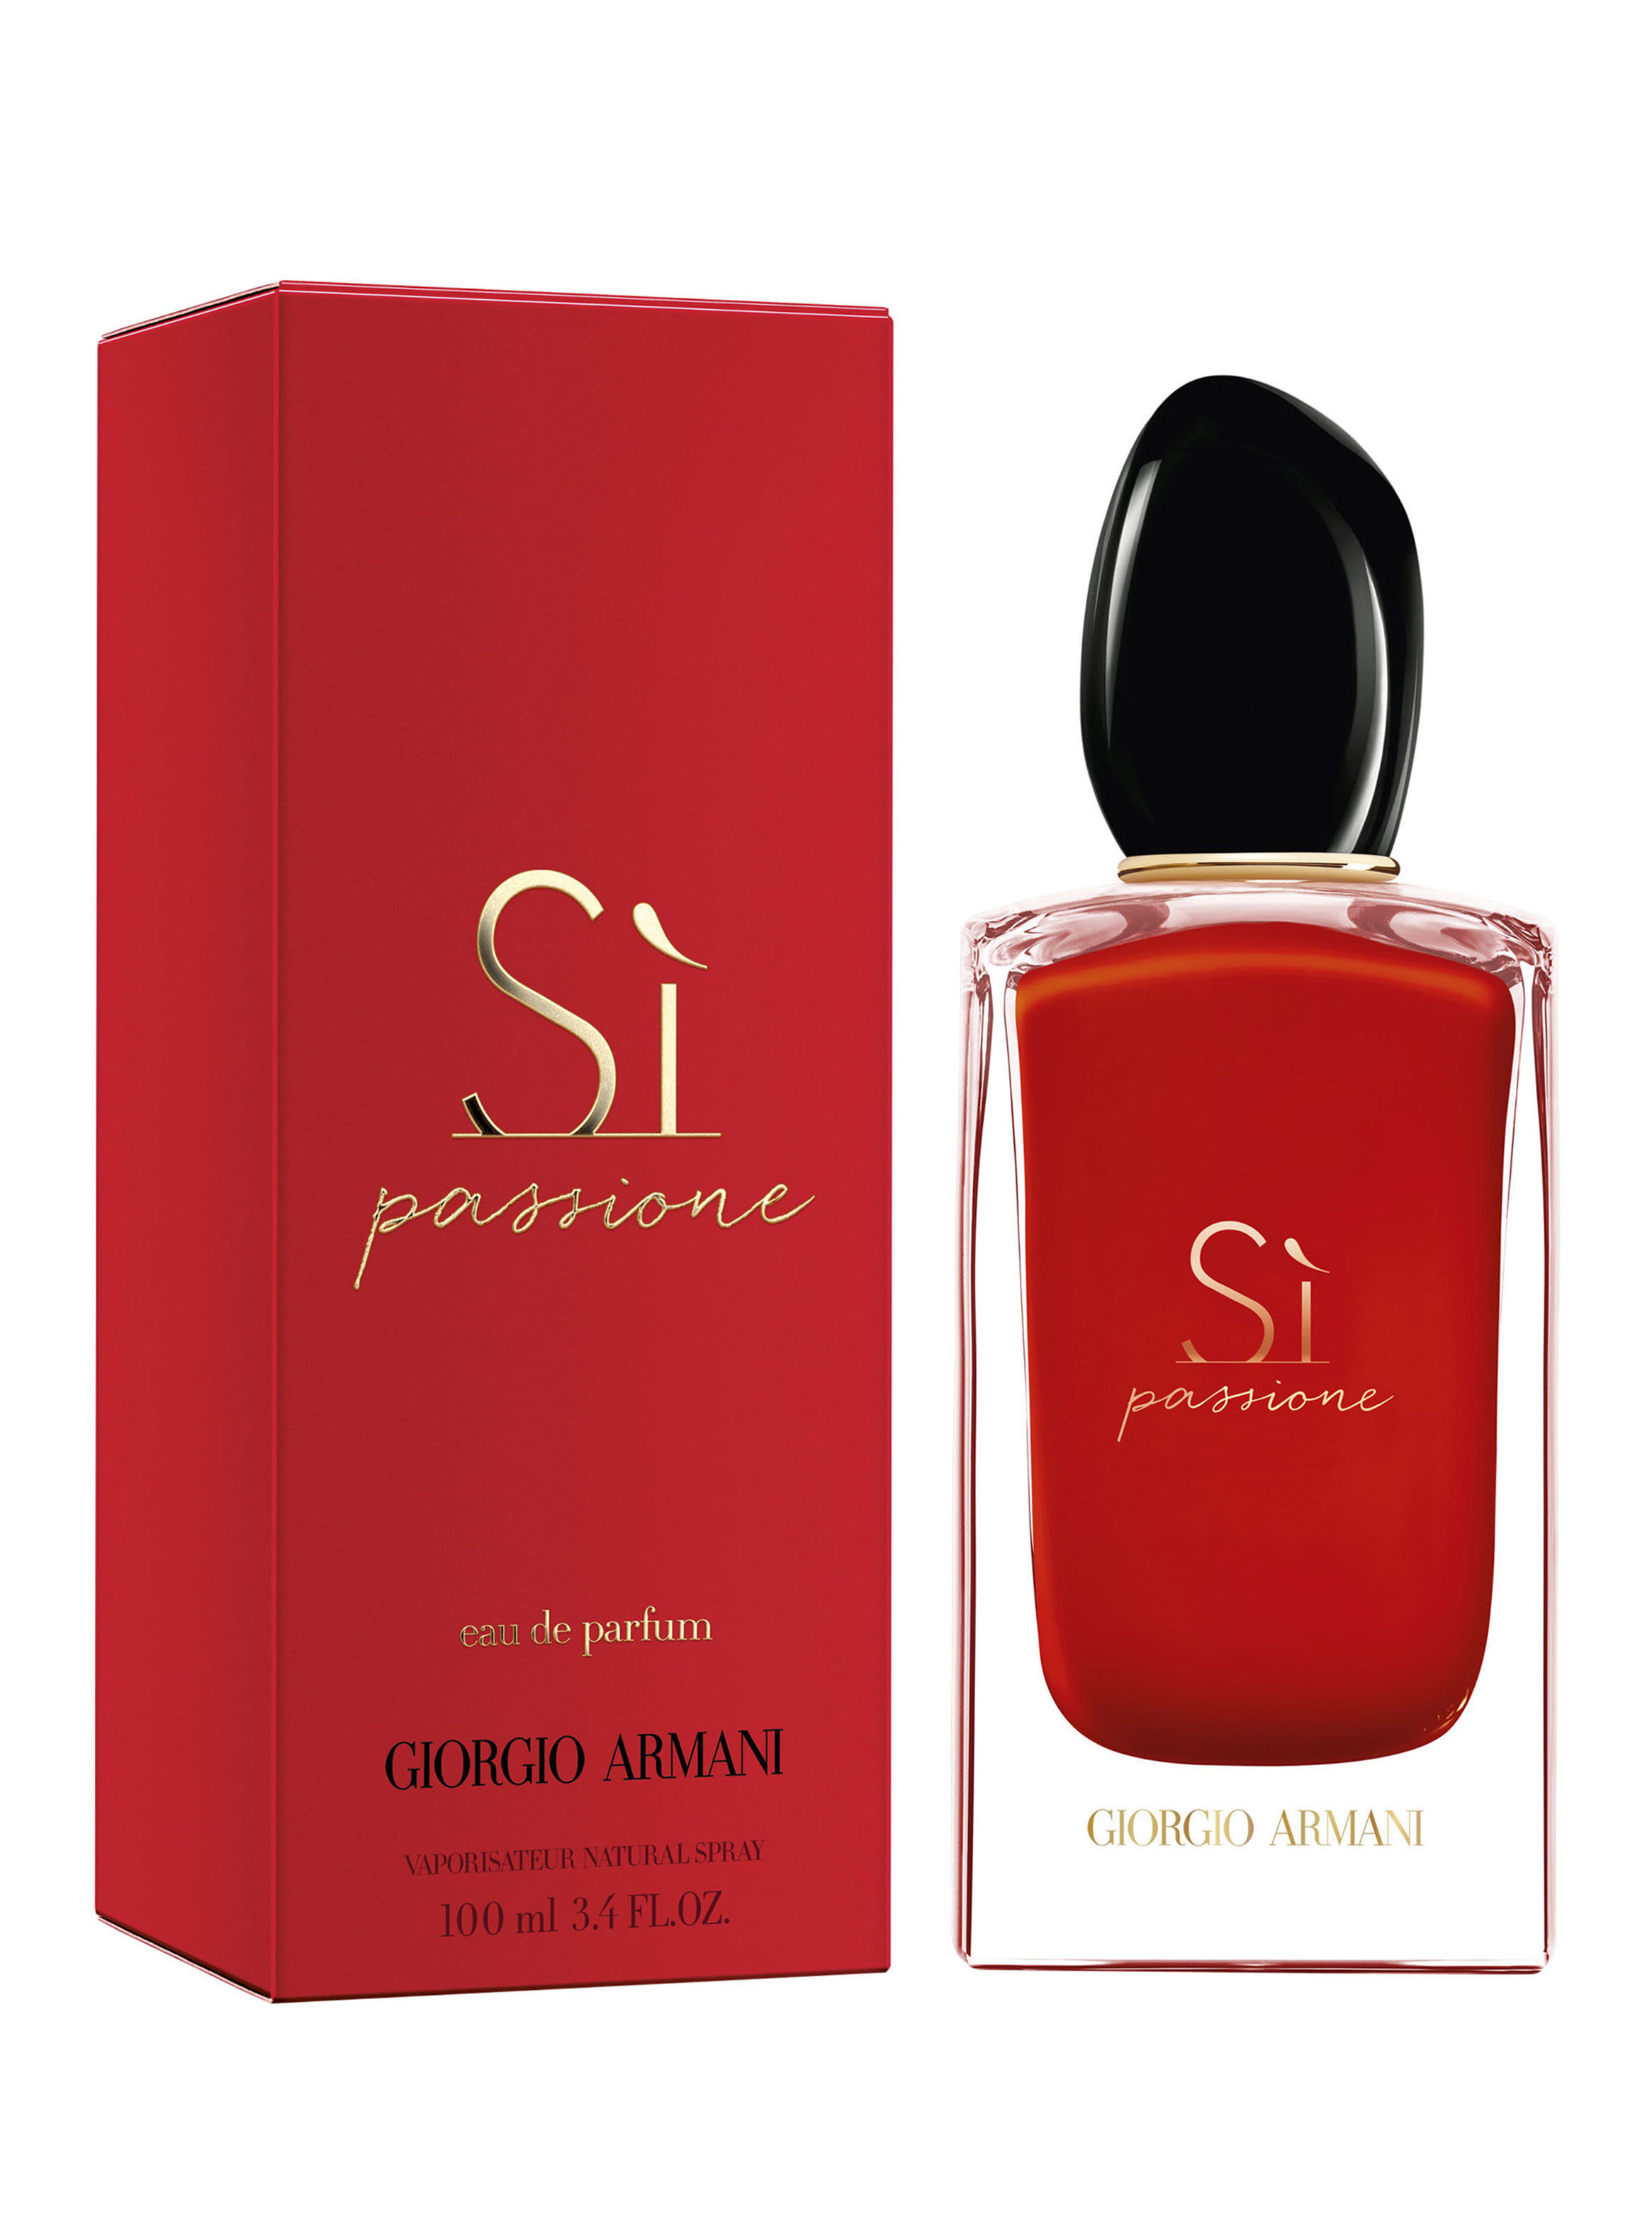 Perfume Giorgio Armani Sí Passione 